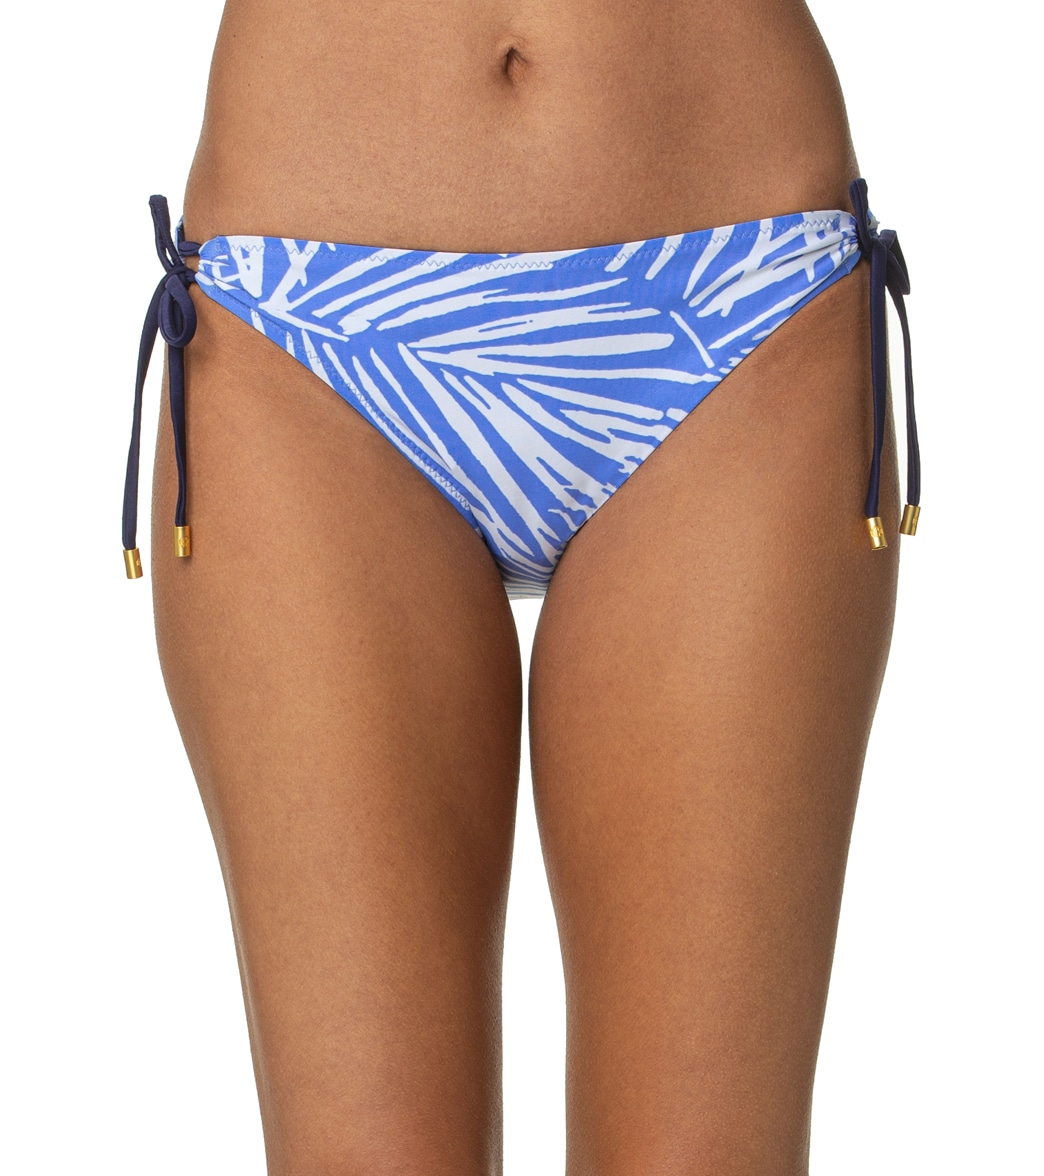 Helen Jon Women's South Sea's Reversible Tunnel Tie Side Bikini Bottom - Blue Periwinkle Large - Swimoutlet.com